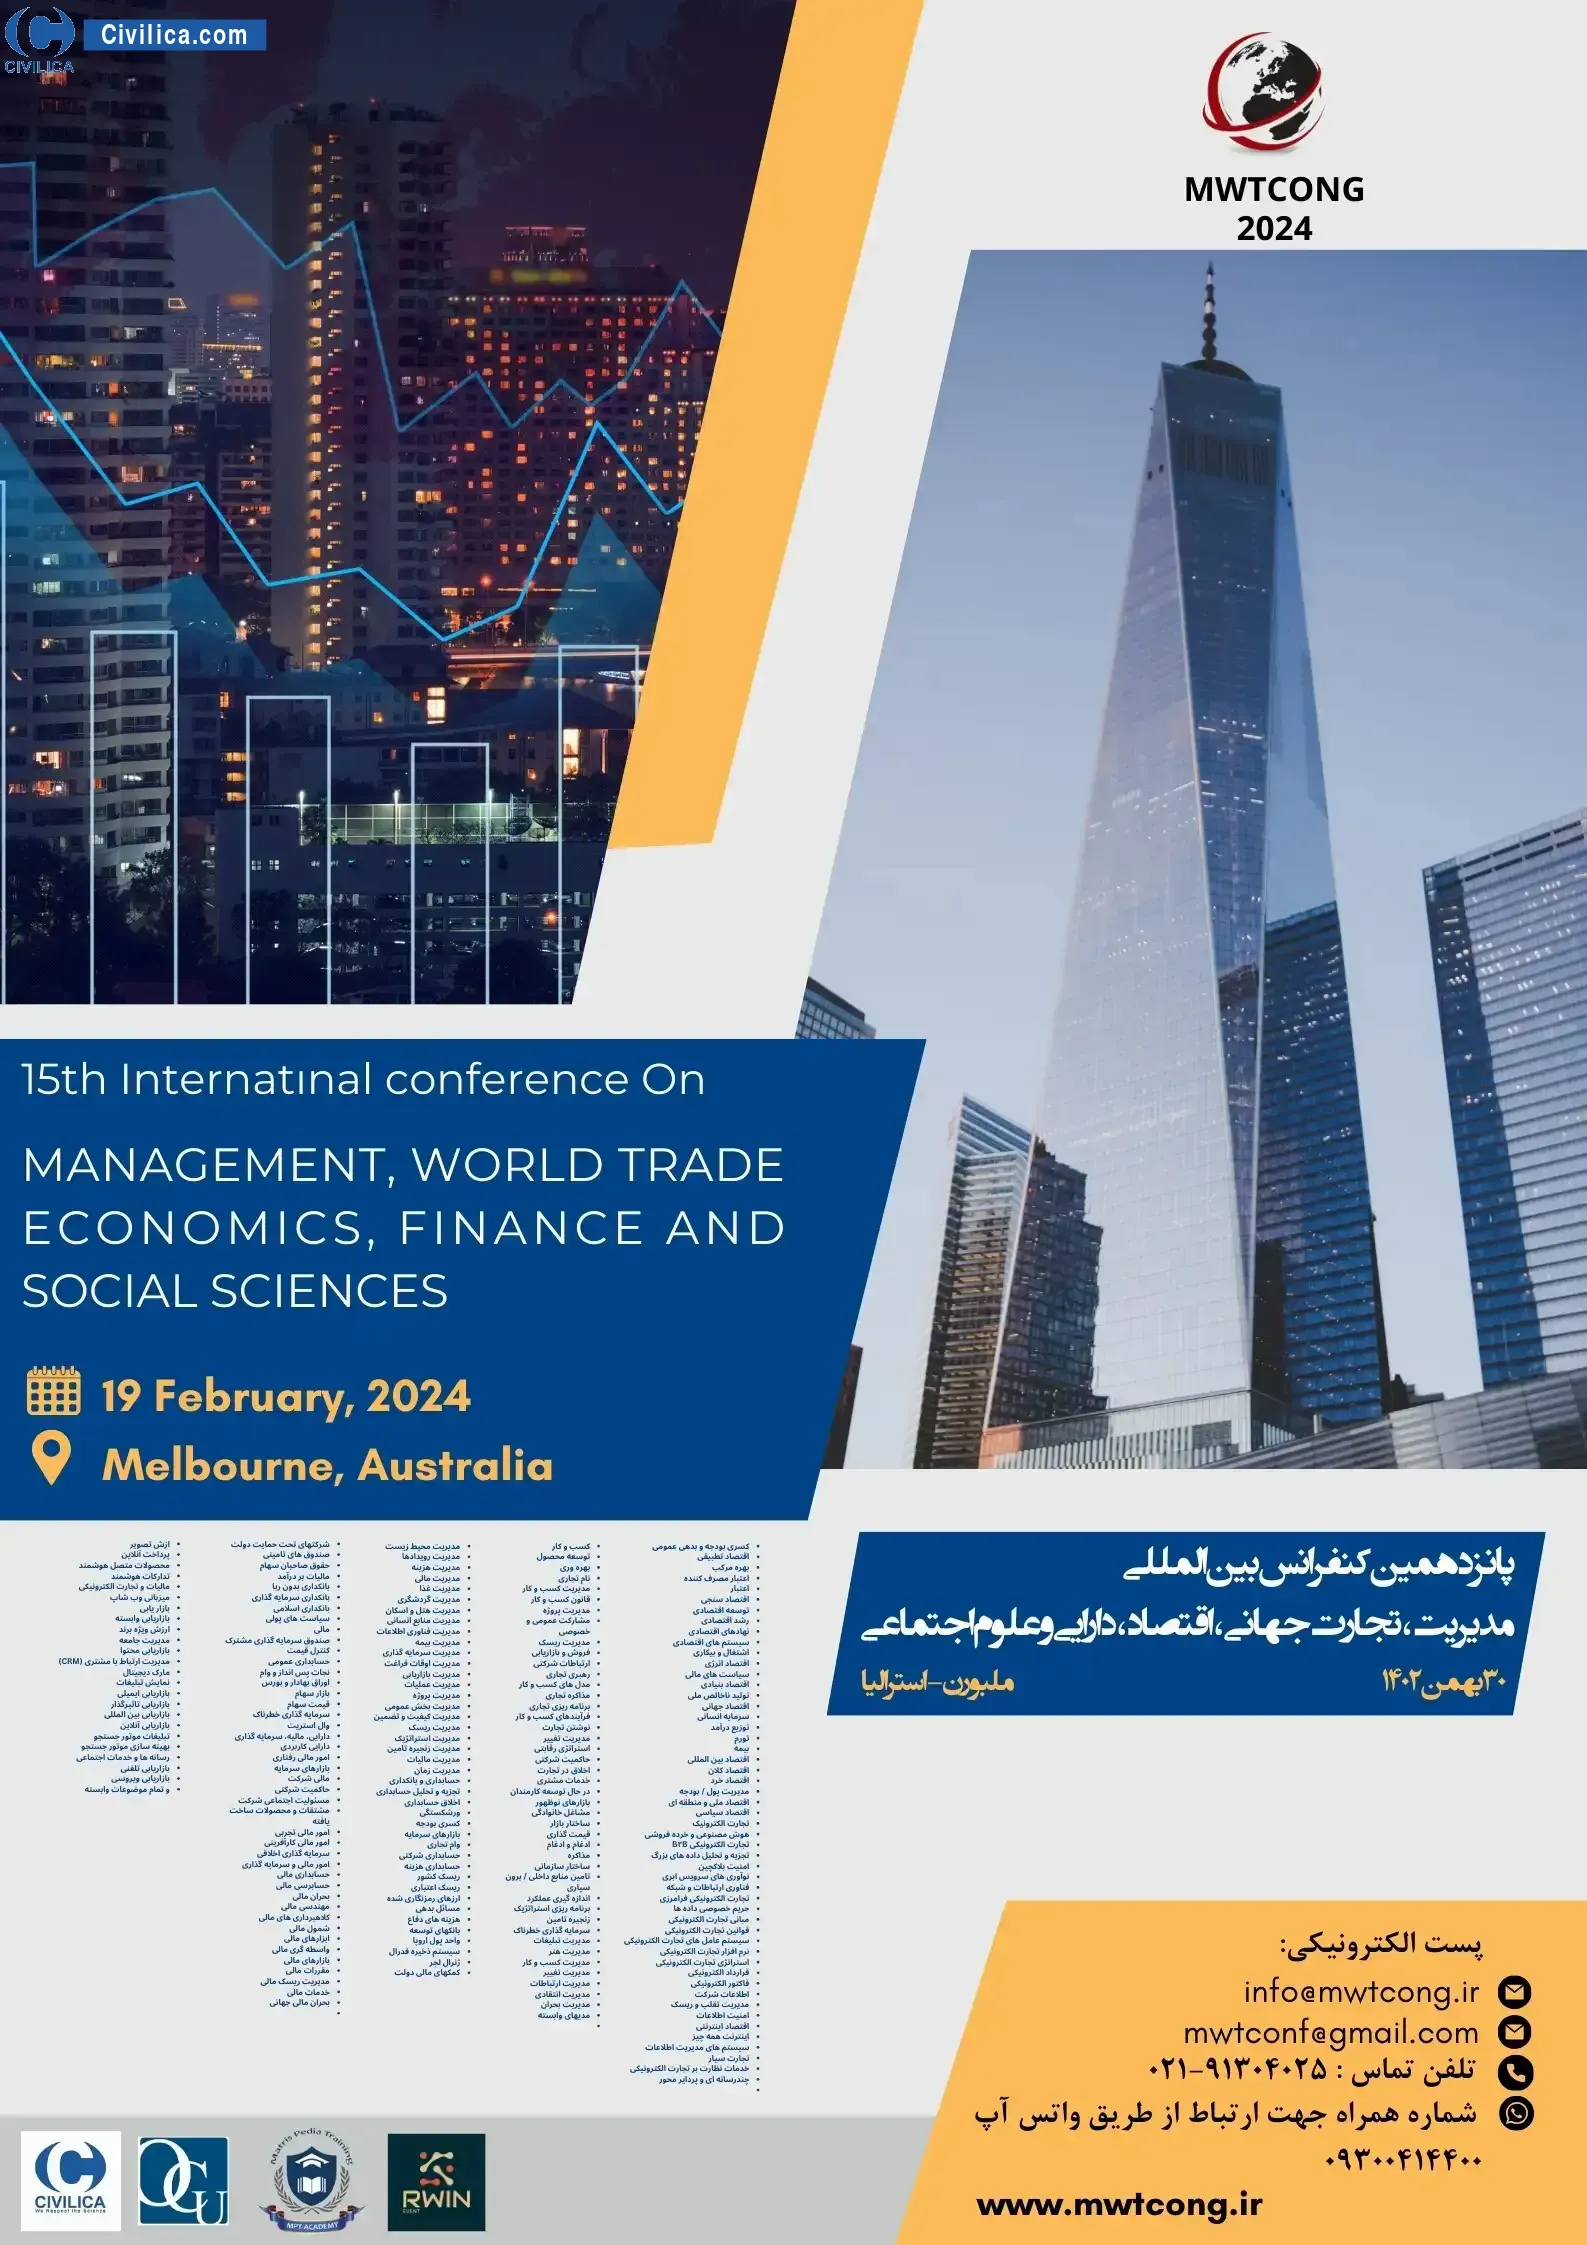 فراخوان مقاله پانزدهمین کنفرانس بین المللی مدیریت، تجارت جهانی، اقتصاد، دارایی و علوم اجتماعی